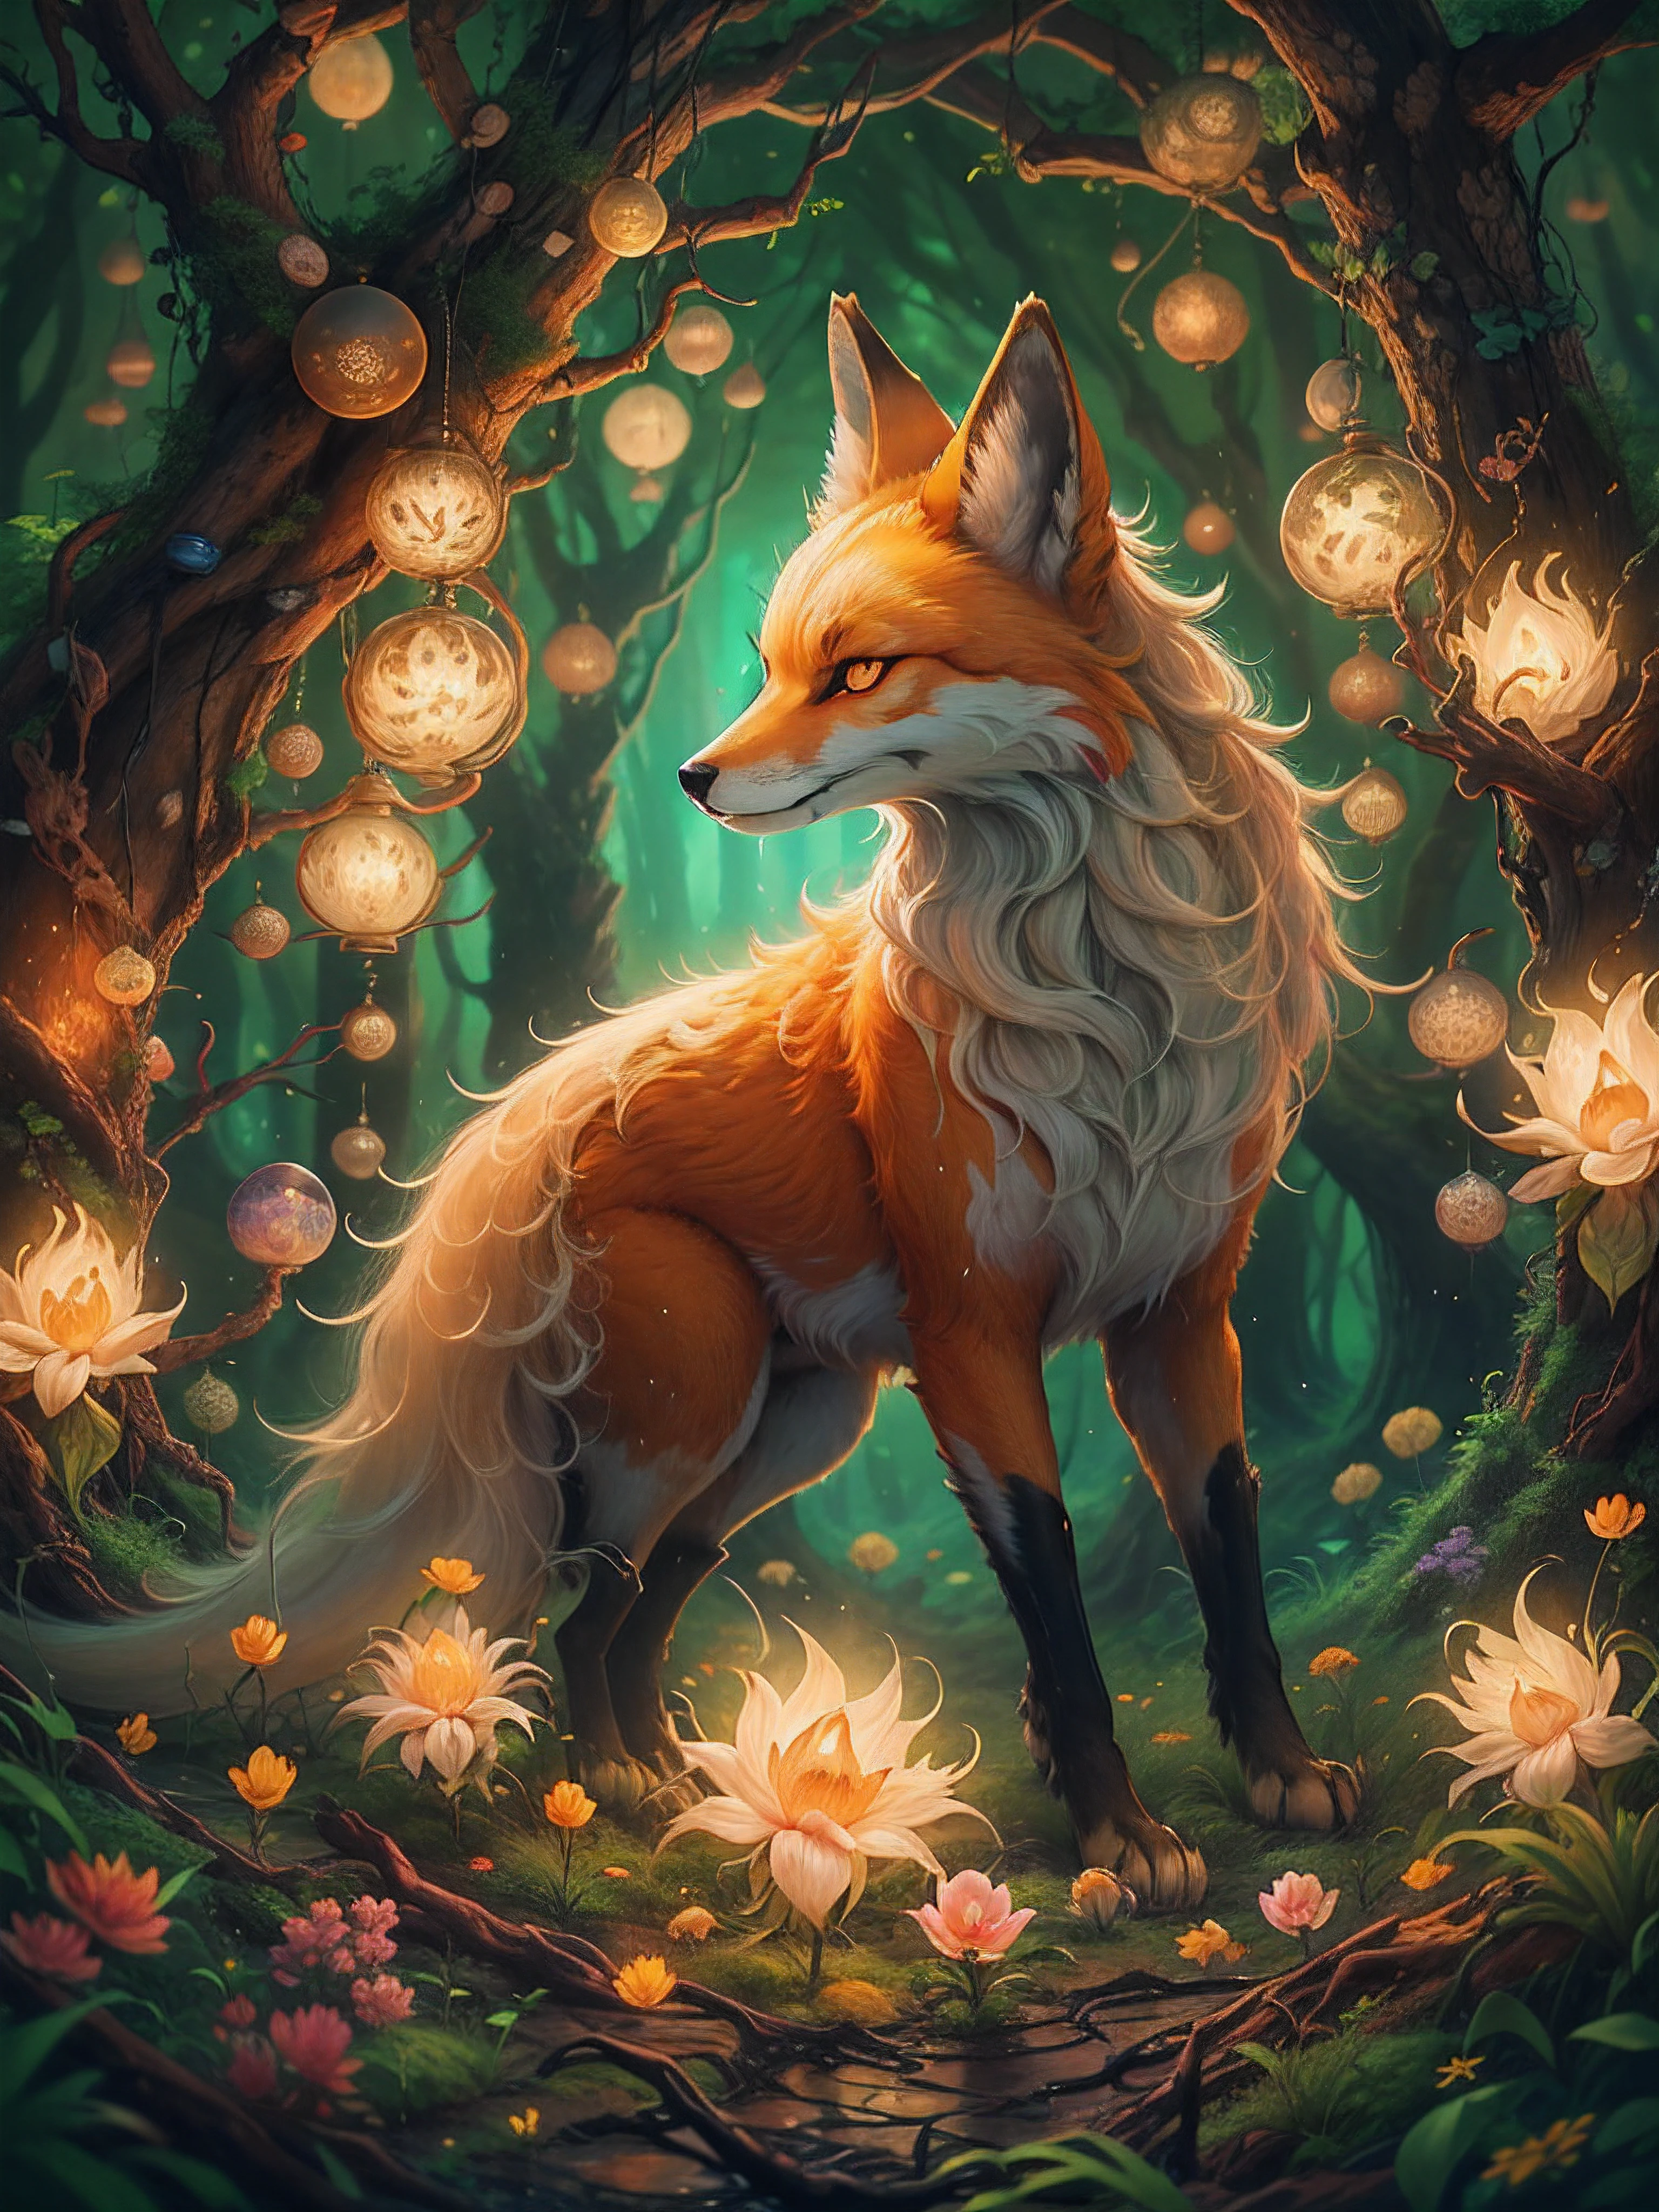 一幅美丽的数字绘画，描绘了神秘森林中的九尾狐. 狐狸周围环绕着发光的光球，森林里充满了郁郁葱葱的绿树和鲜花. 这幅画给人一种温暖而诱人的感觉.